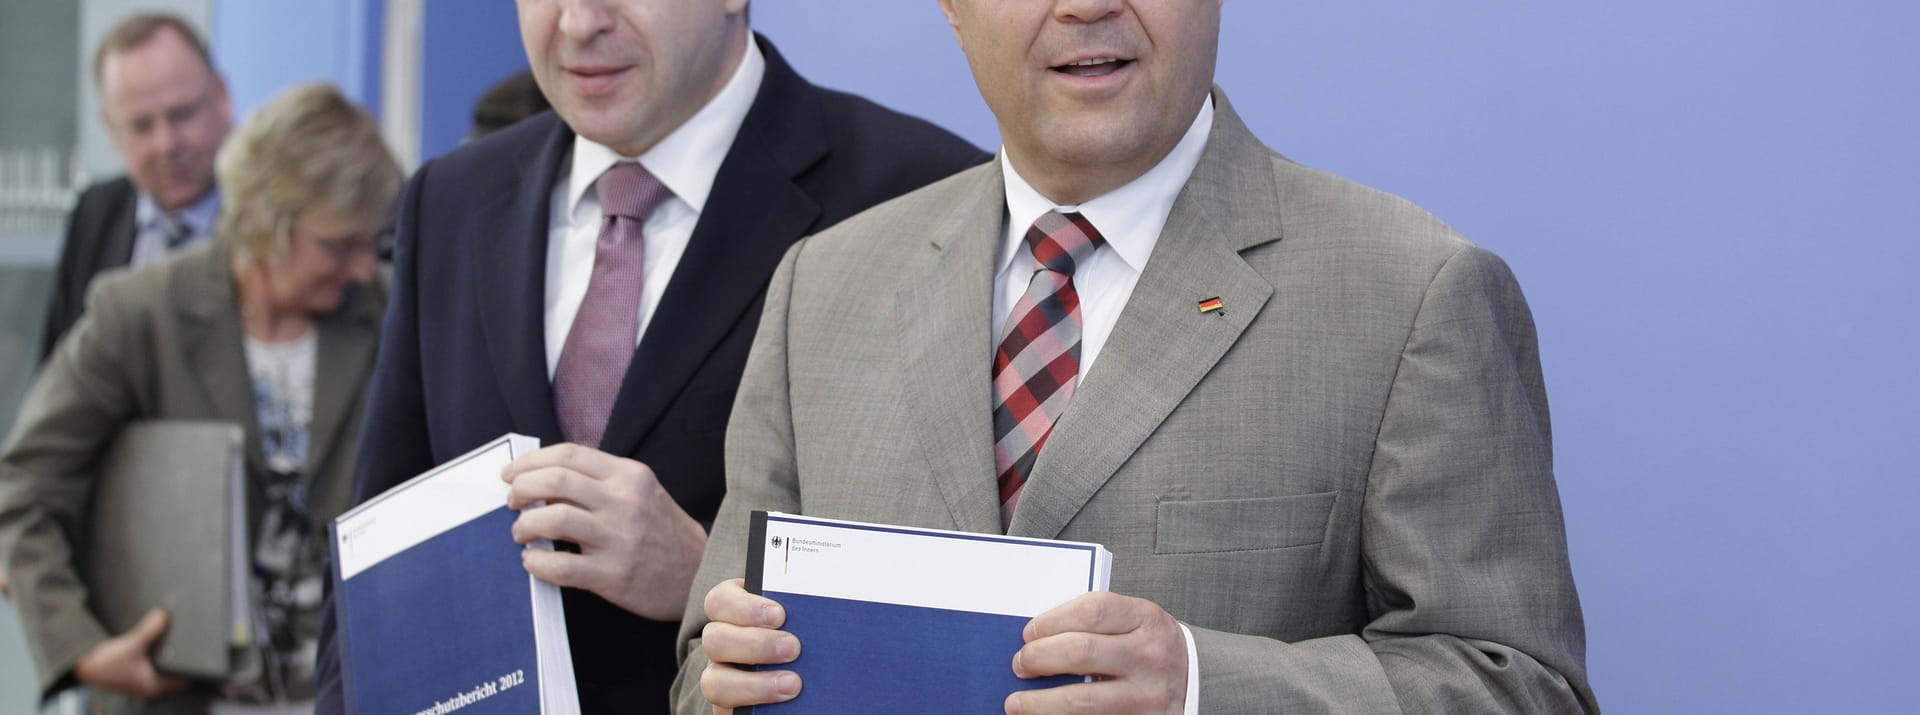 Hans-Peter Friedrich und Hans-Georg Maaßen: 2012 machte der CSU-Politiker Maaßen den Juristen zu dem Mann, der den Verfassungsschutz leitet und mit ihm die Berichte vorstellt.